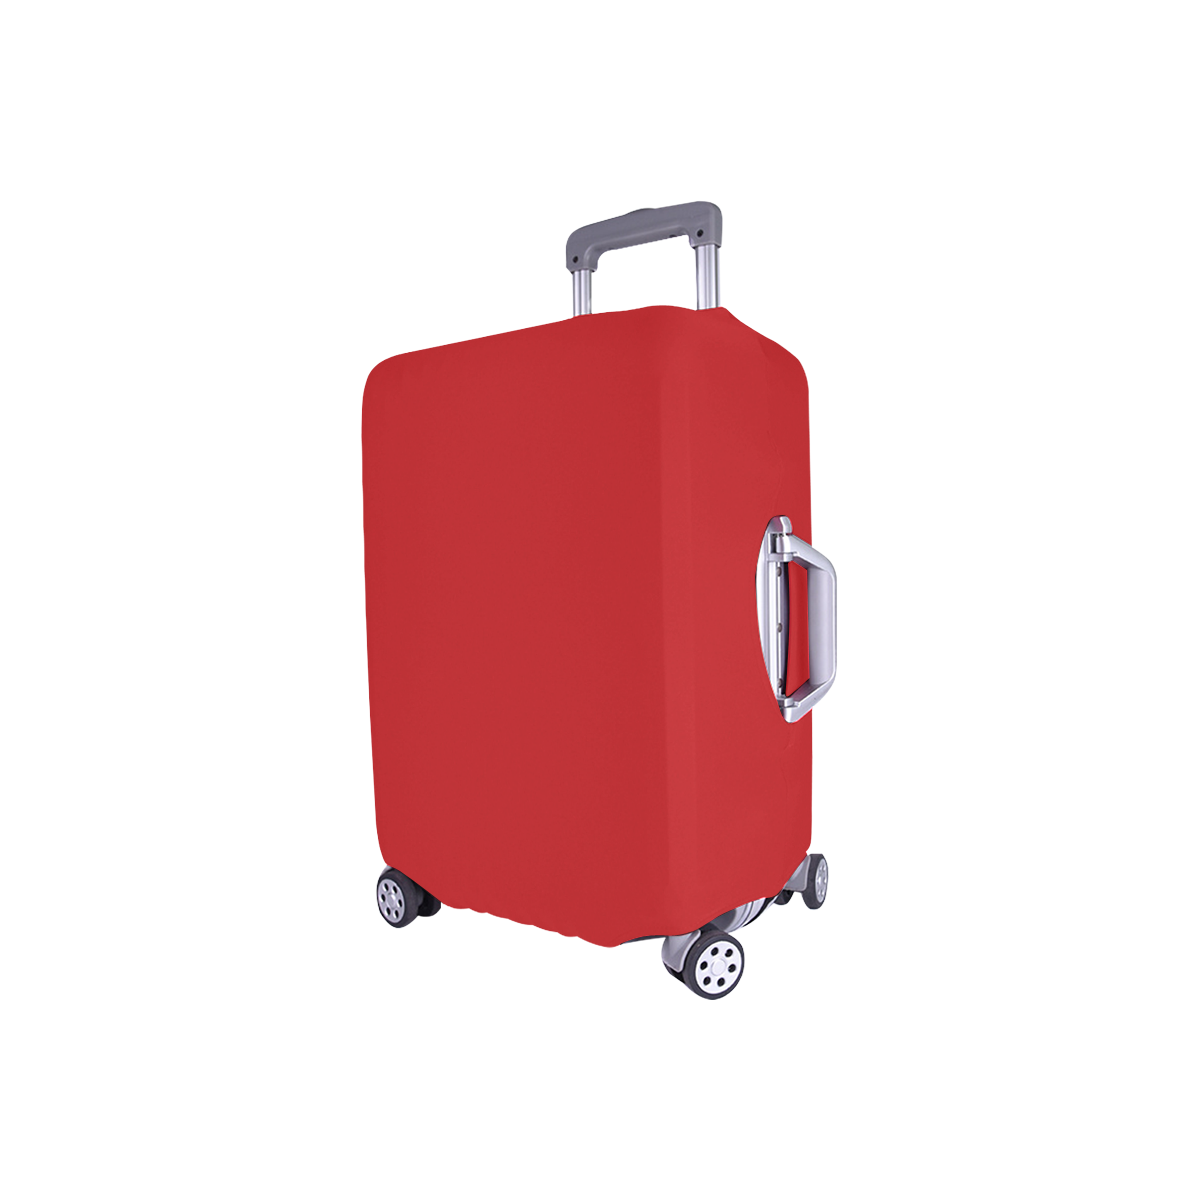 Alizarin Dissolve Luggage Cover/Small 18"-21"